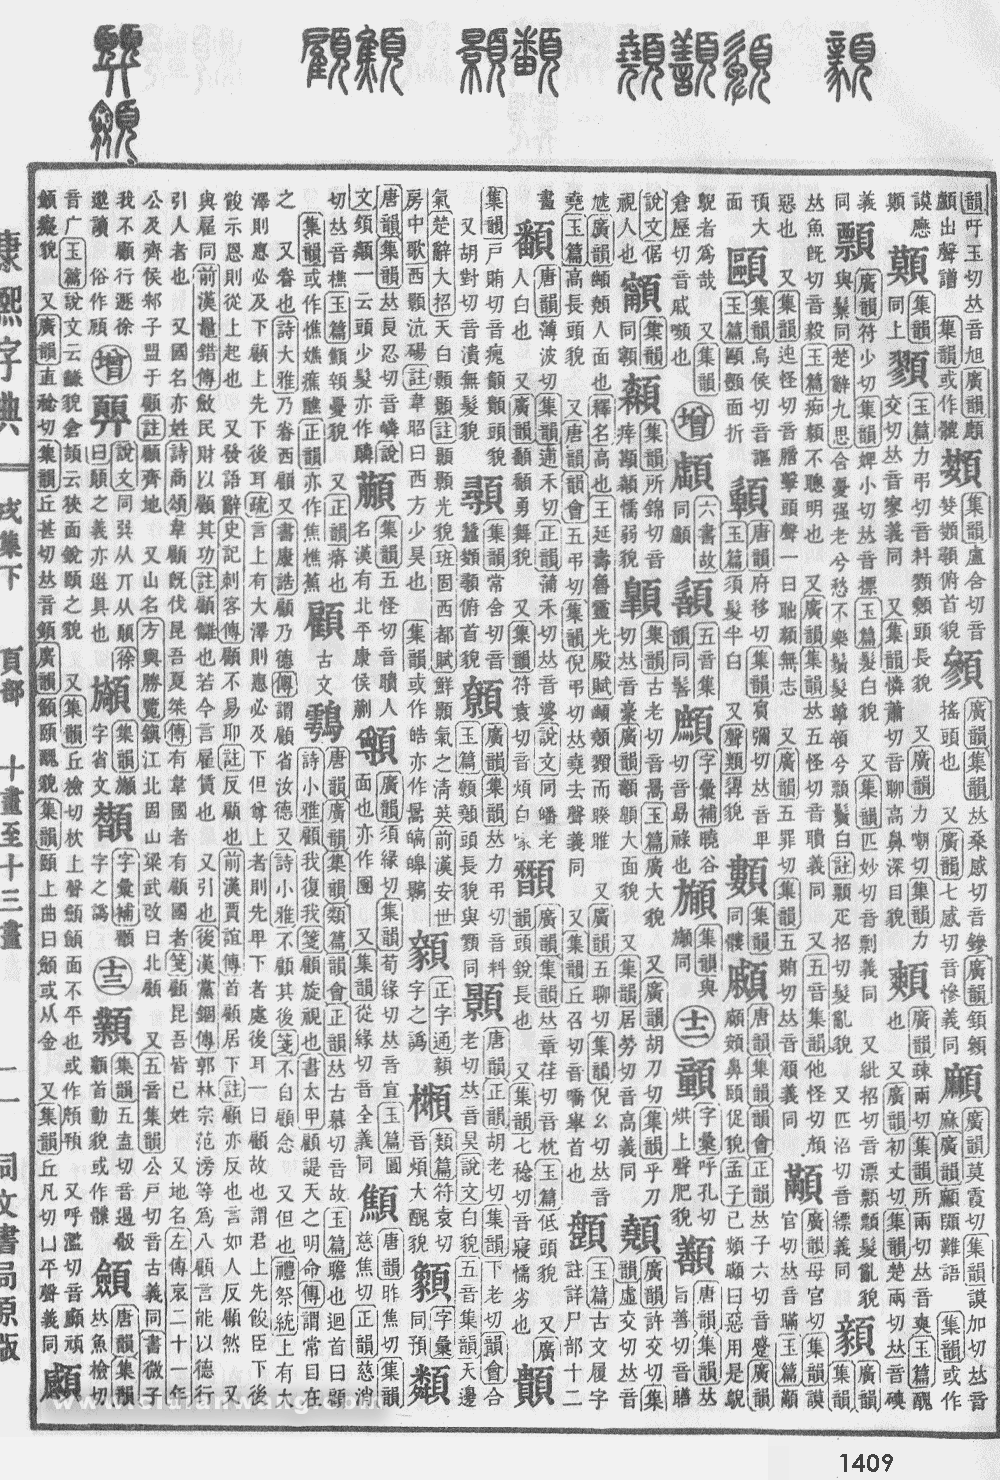 康熙字典掃描版第1409頁